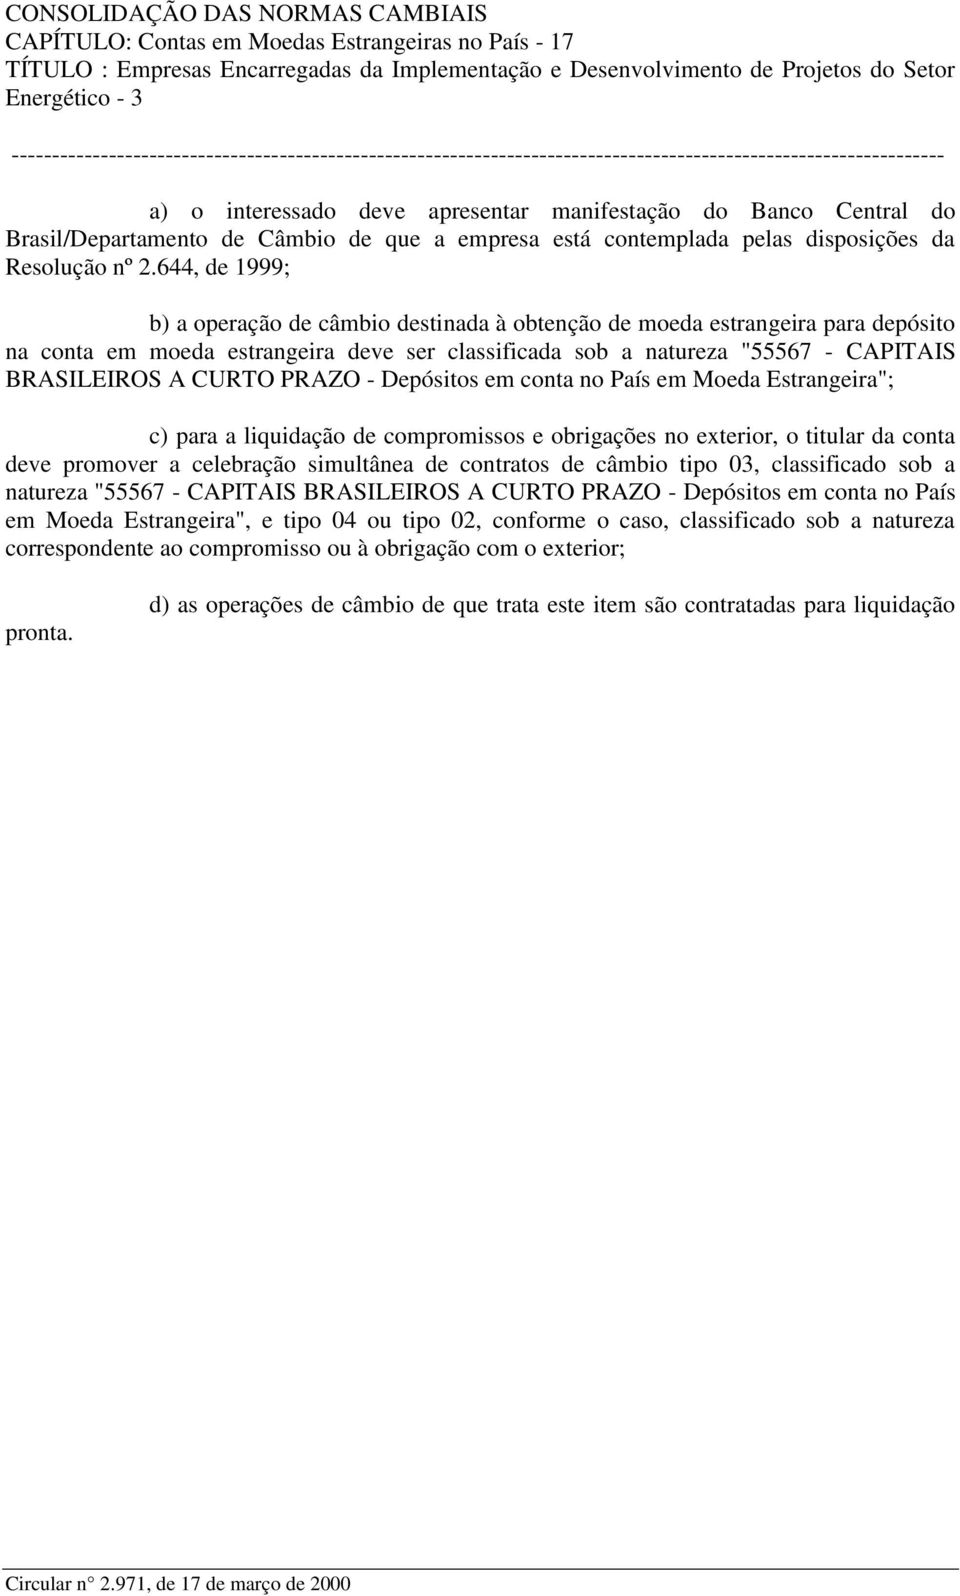 644, de 1999; b) a operação de câmbio destinada à obtenção de moeda estrangeira para depósito na conta em moeda estrangeira deve ser classificada sob a natureza "55567 - CAPITAIS BRASILEIROS A CURTO